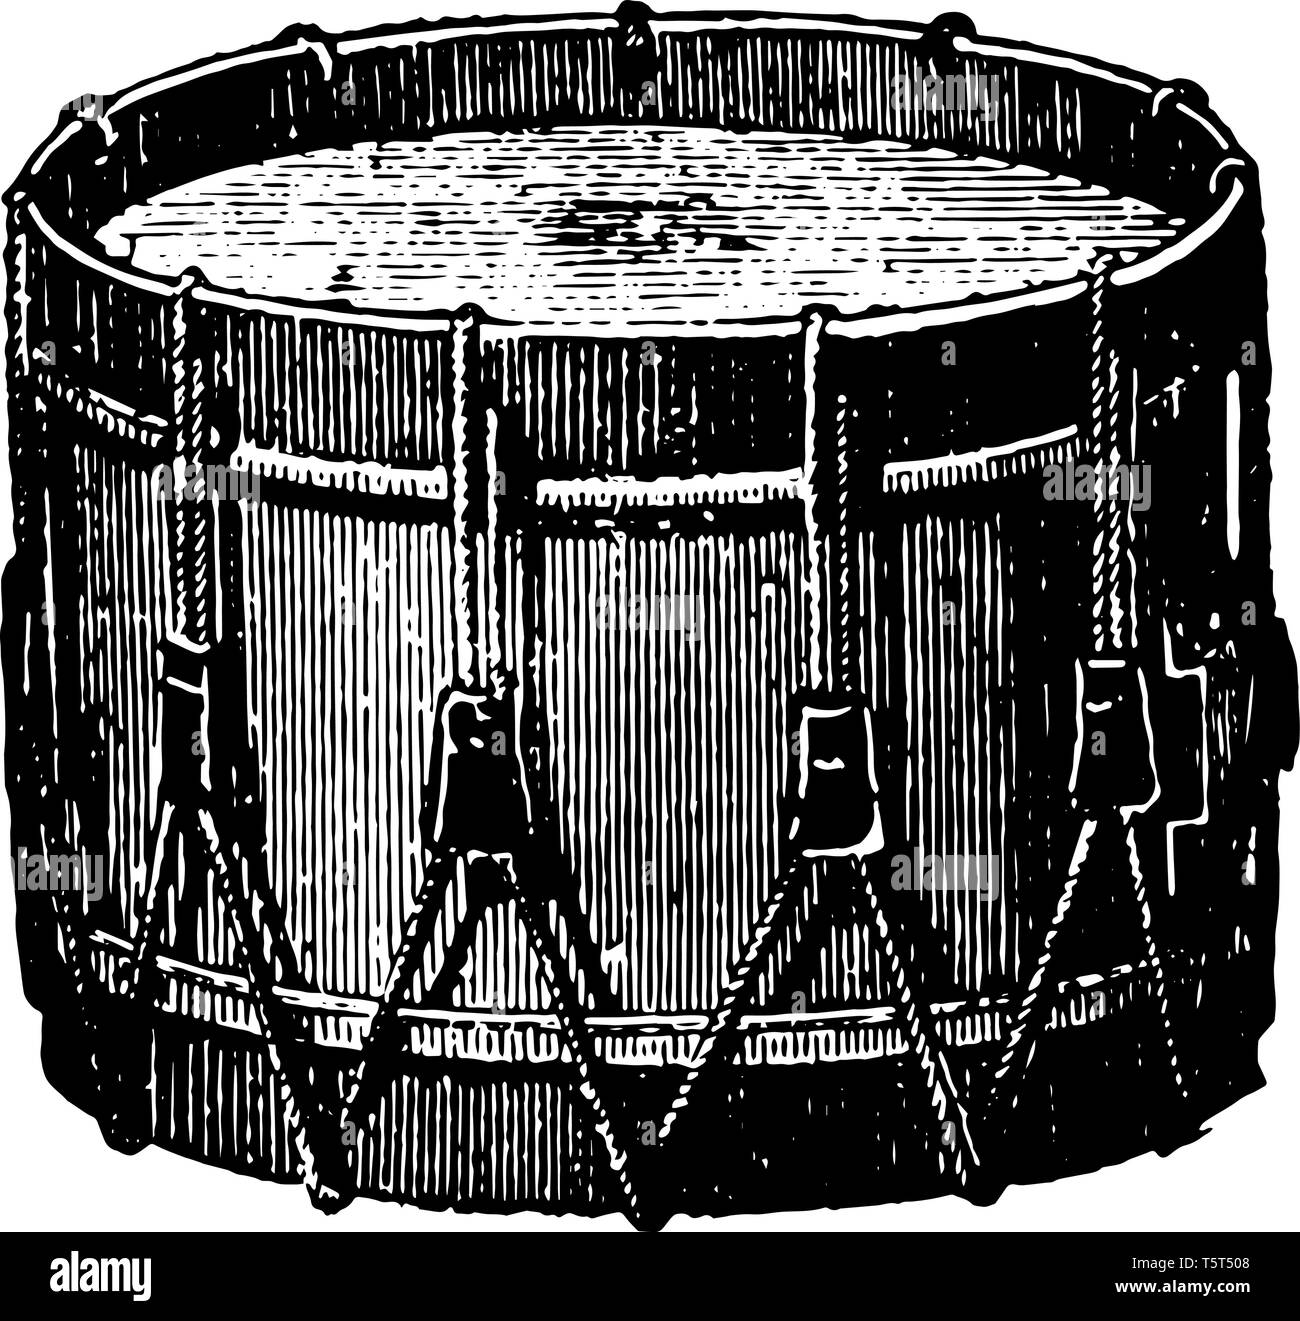 Seite Trommel ist eine militärische Trommel, und ist in allen rhythmischer Figuren durch alternative Gleichzeitige Schläge mit zwei Drumsticks, vintage Line drawin verwendet Stock Vektor